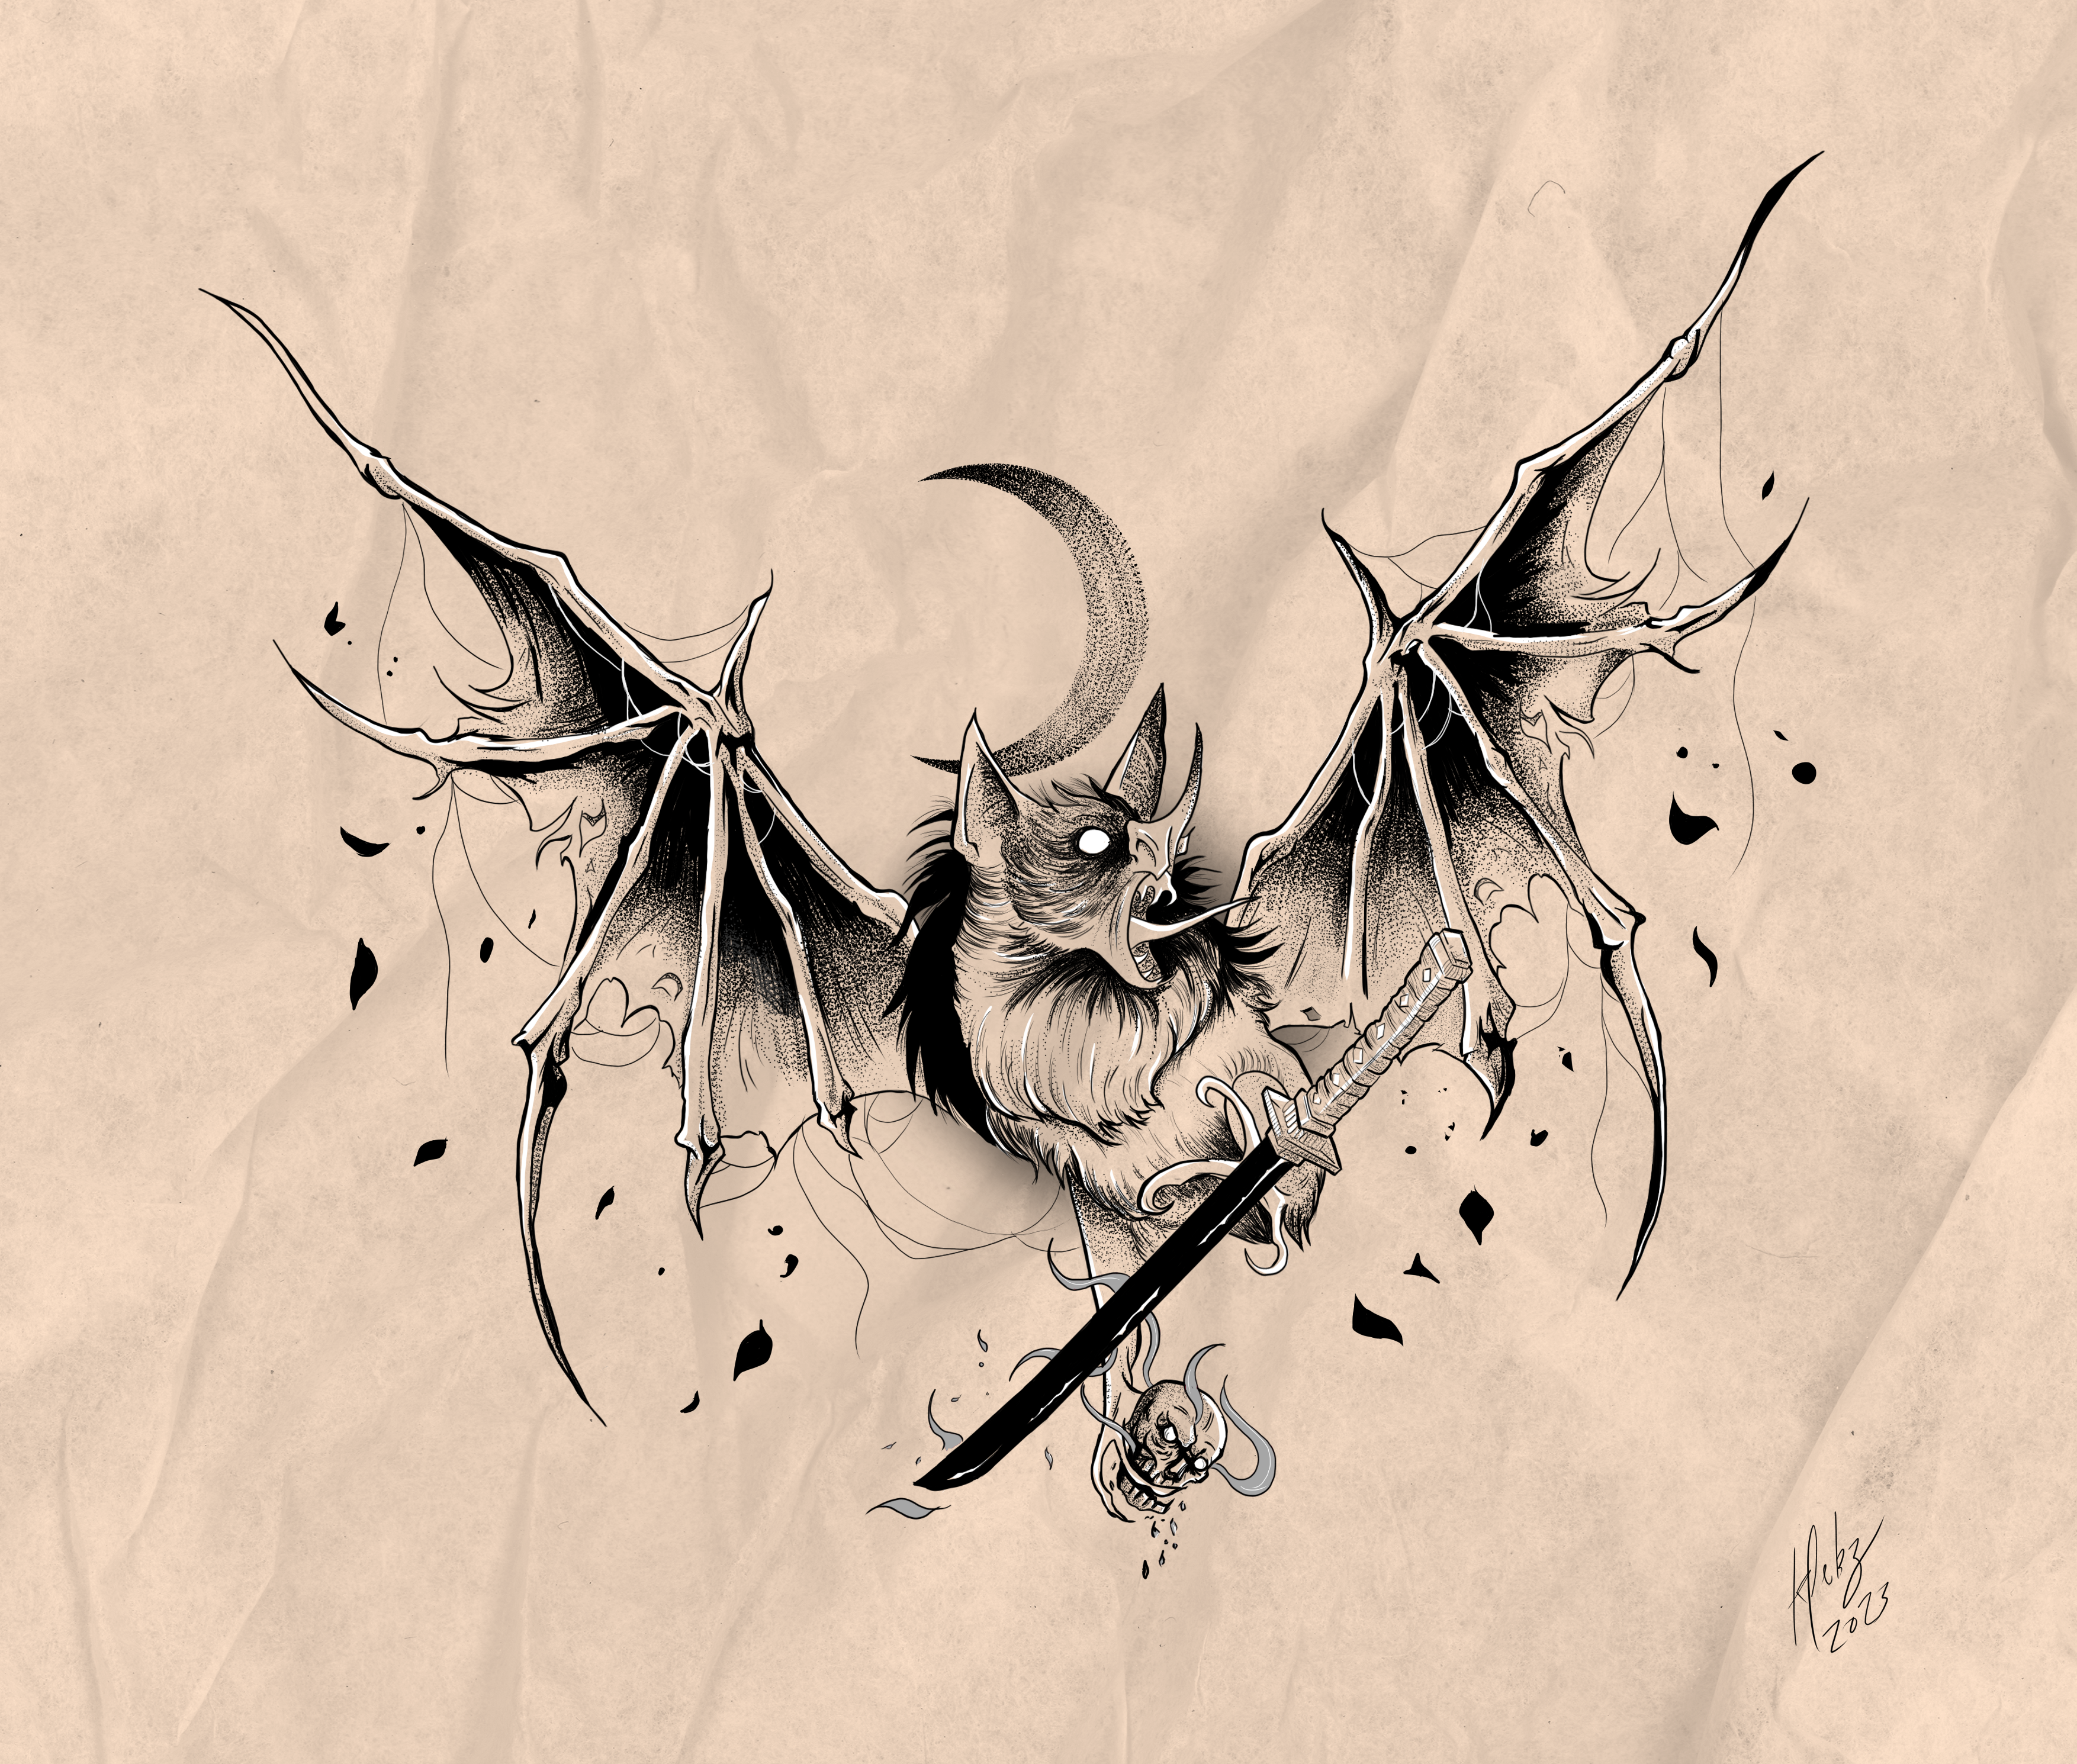 Rat King by grinderbird on DeviantArt